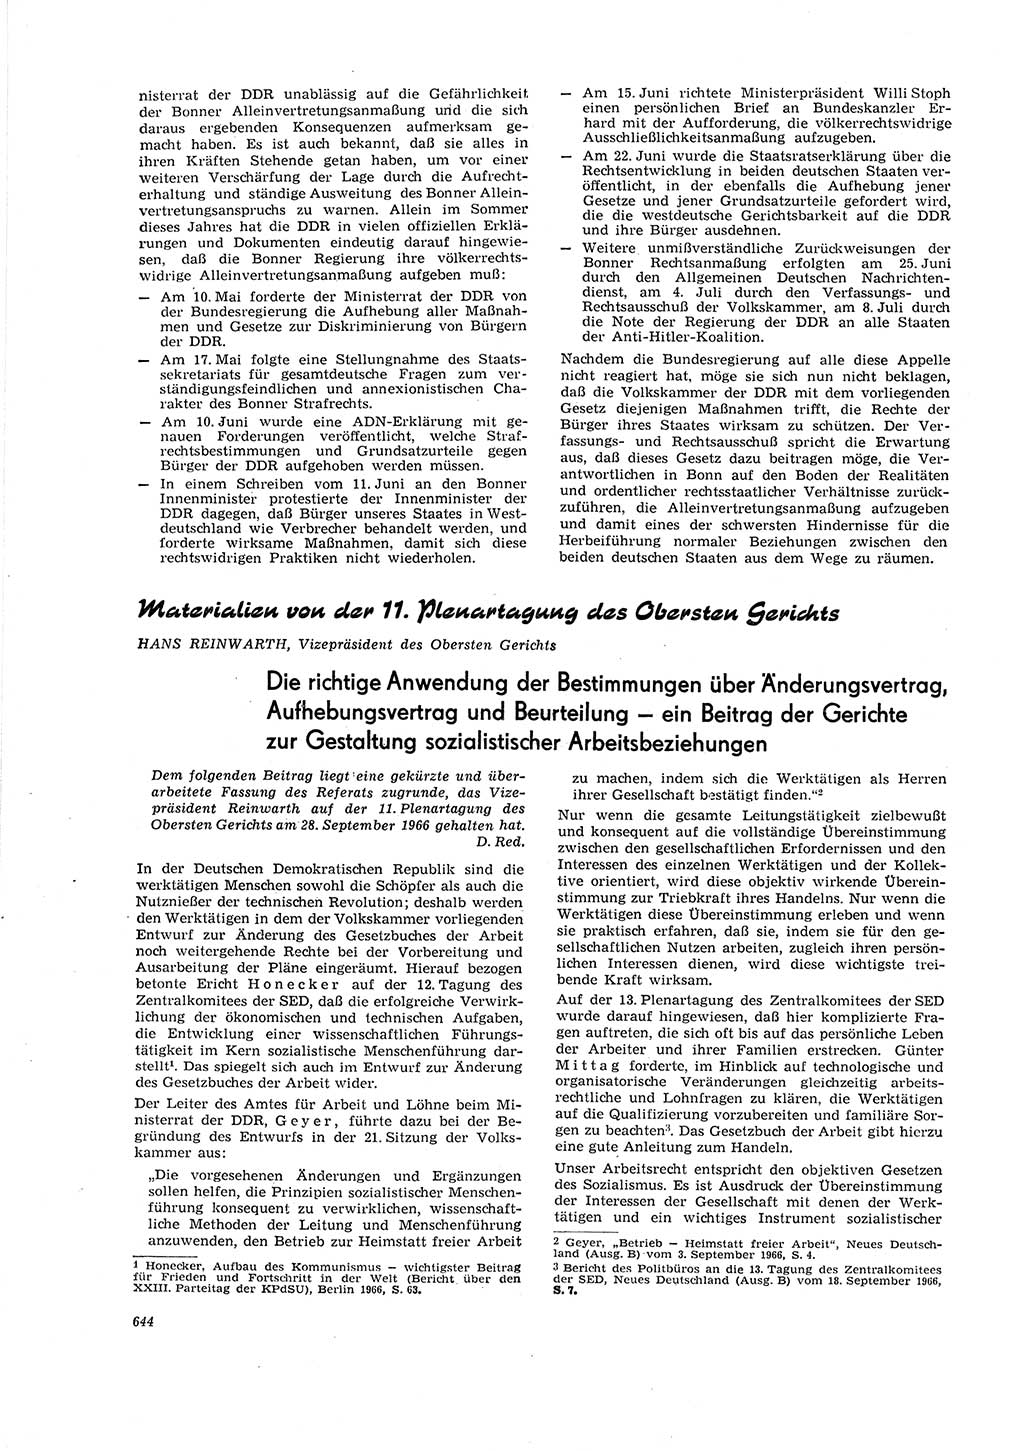 Neue Justiz (NJ), Zeitschrift für Recht und Rechtswissenschaft [Deutsche Demokratische Republik (DDR)], 20. Jahrgang 1966, Seite 644 (NJ DDR 1966, S. 644)